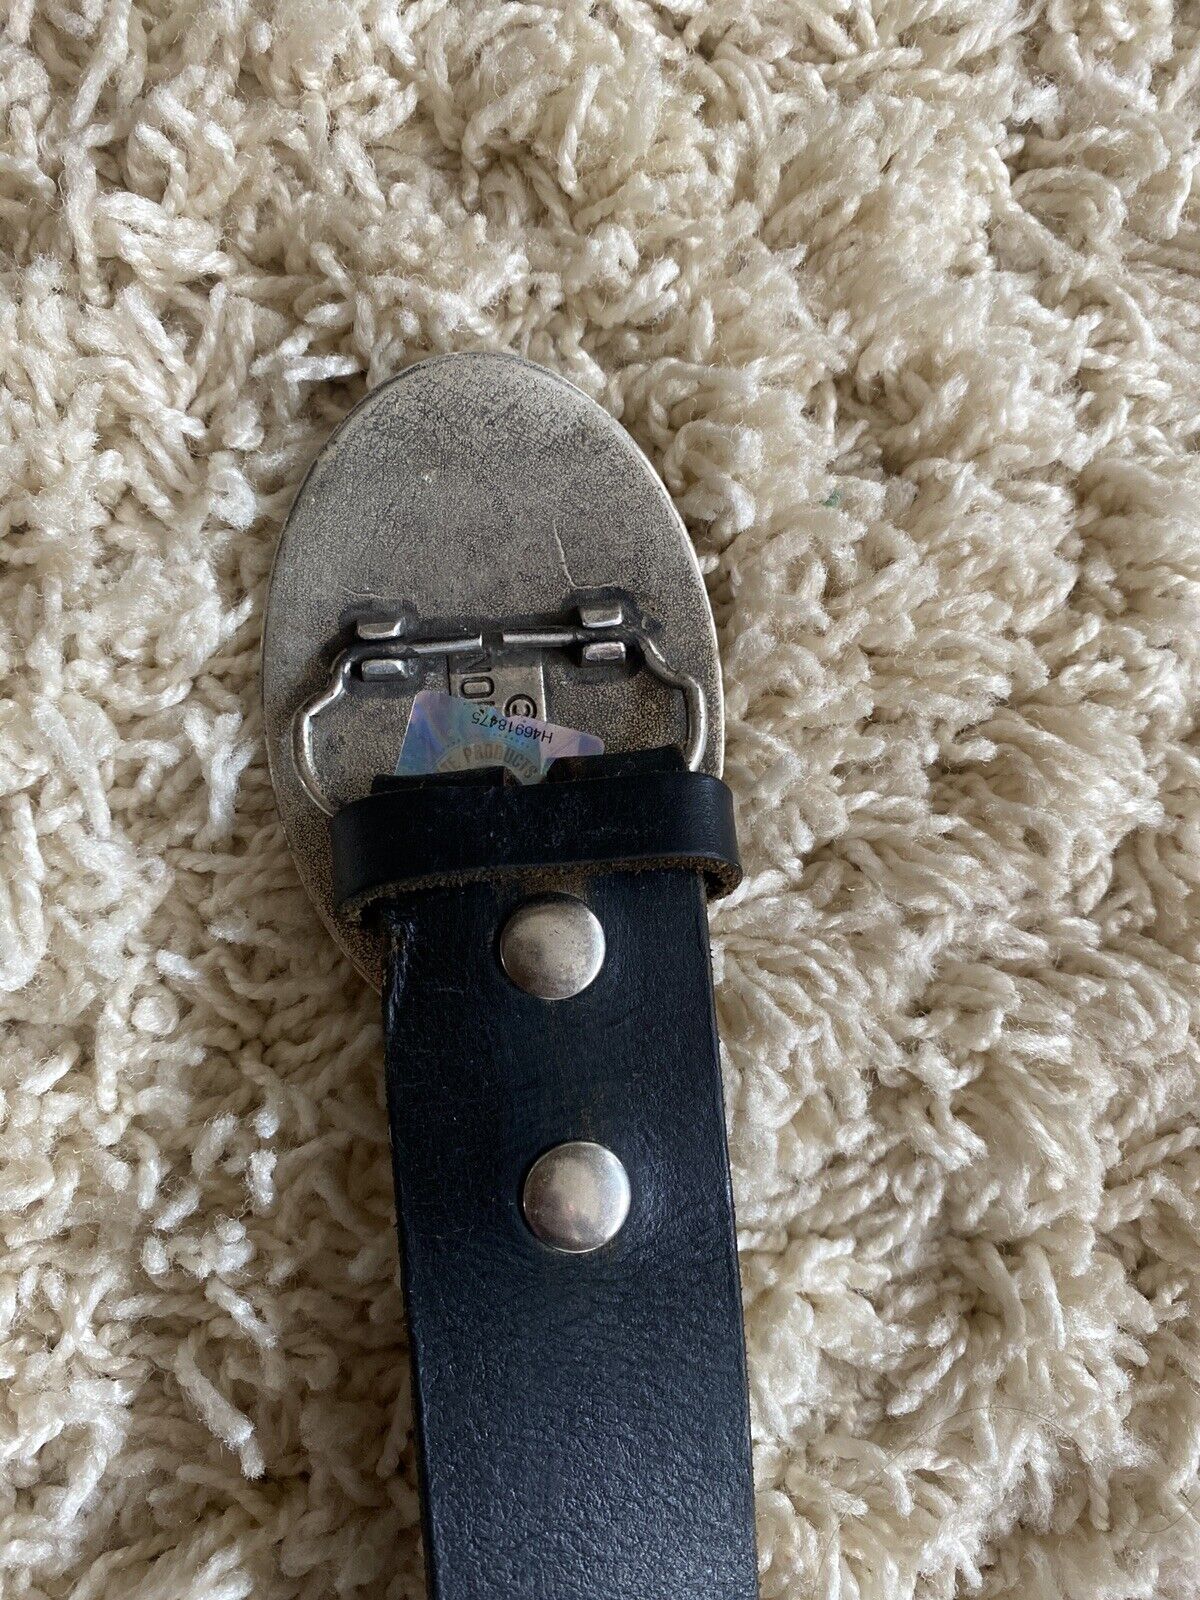 designer belt buckles for men - image 2